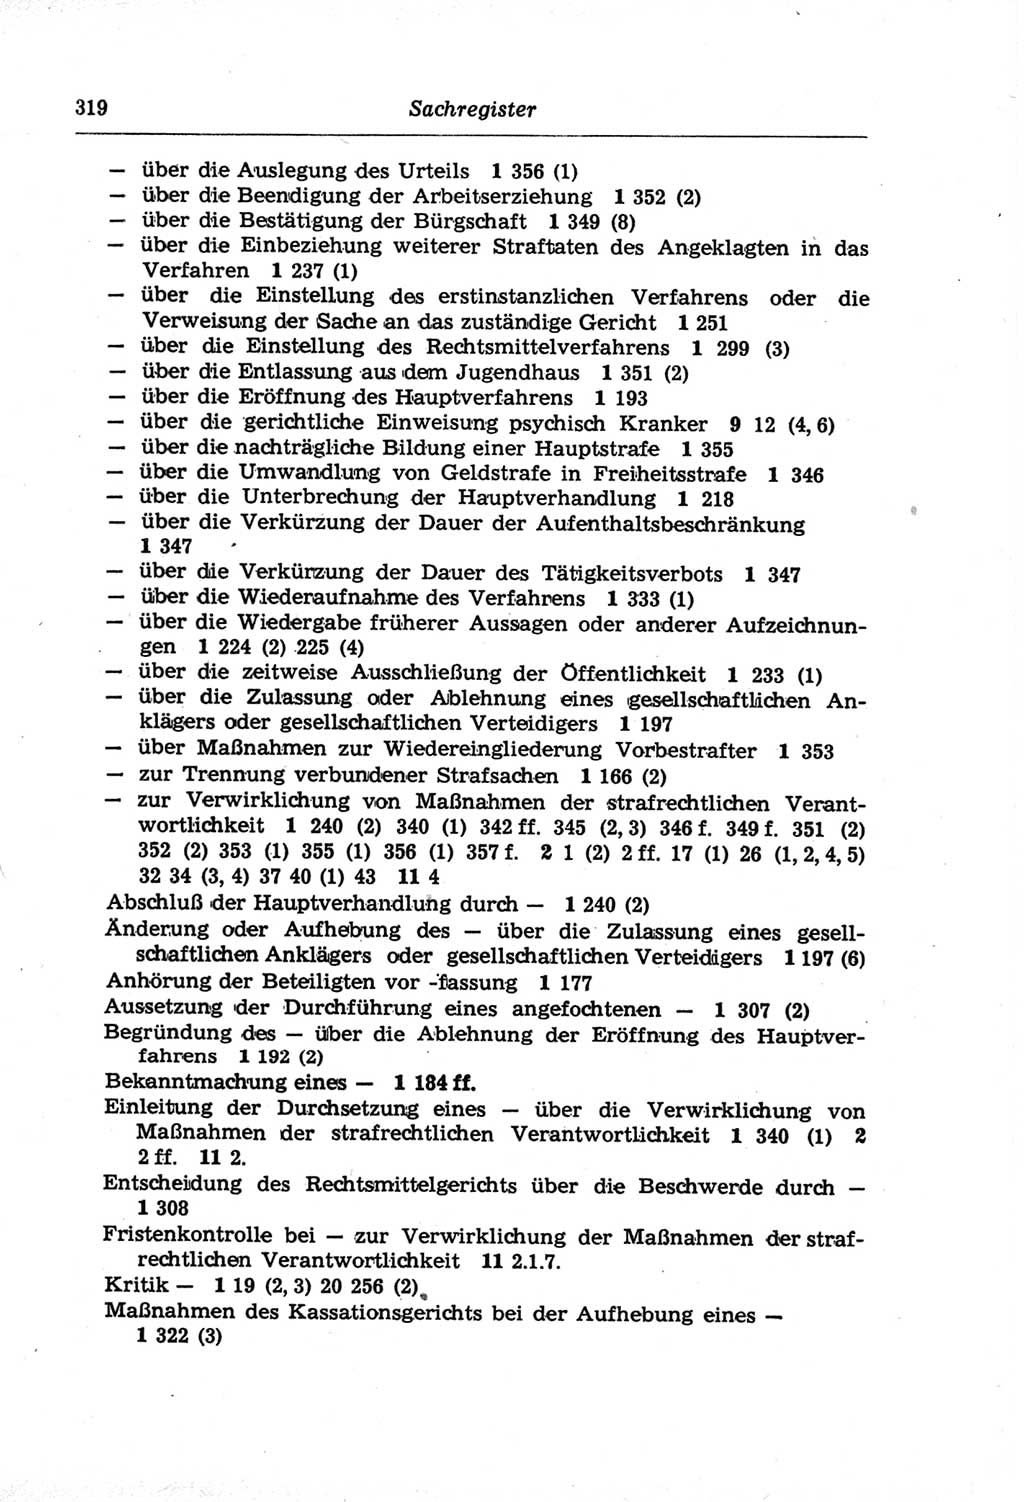 Strafprozeßordnung (StPO) der Deutschen Demokratischen Republik (DDR) und angrenzende Gesetze und Bestimmungen 1968, Seite 319 (StPO Ges. Bstgn. DDR 1968, S. 319)